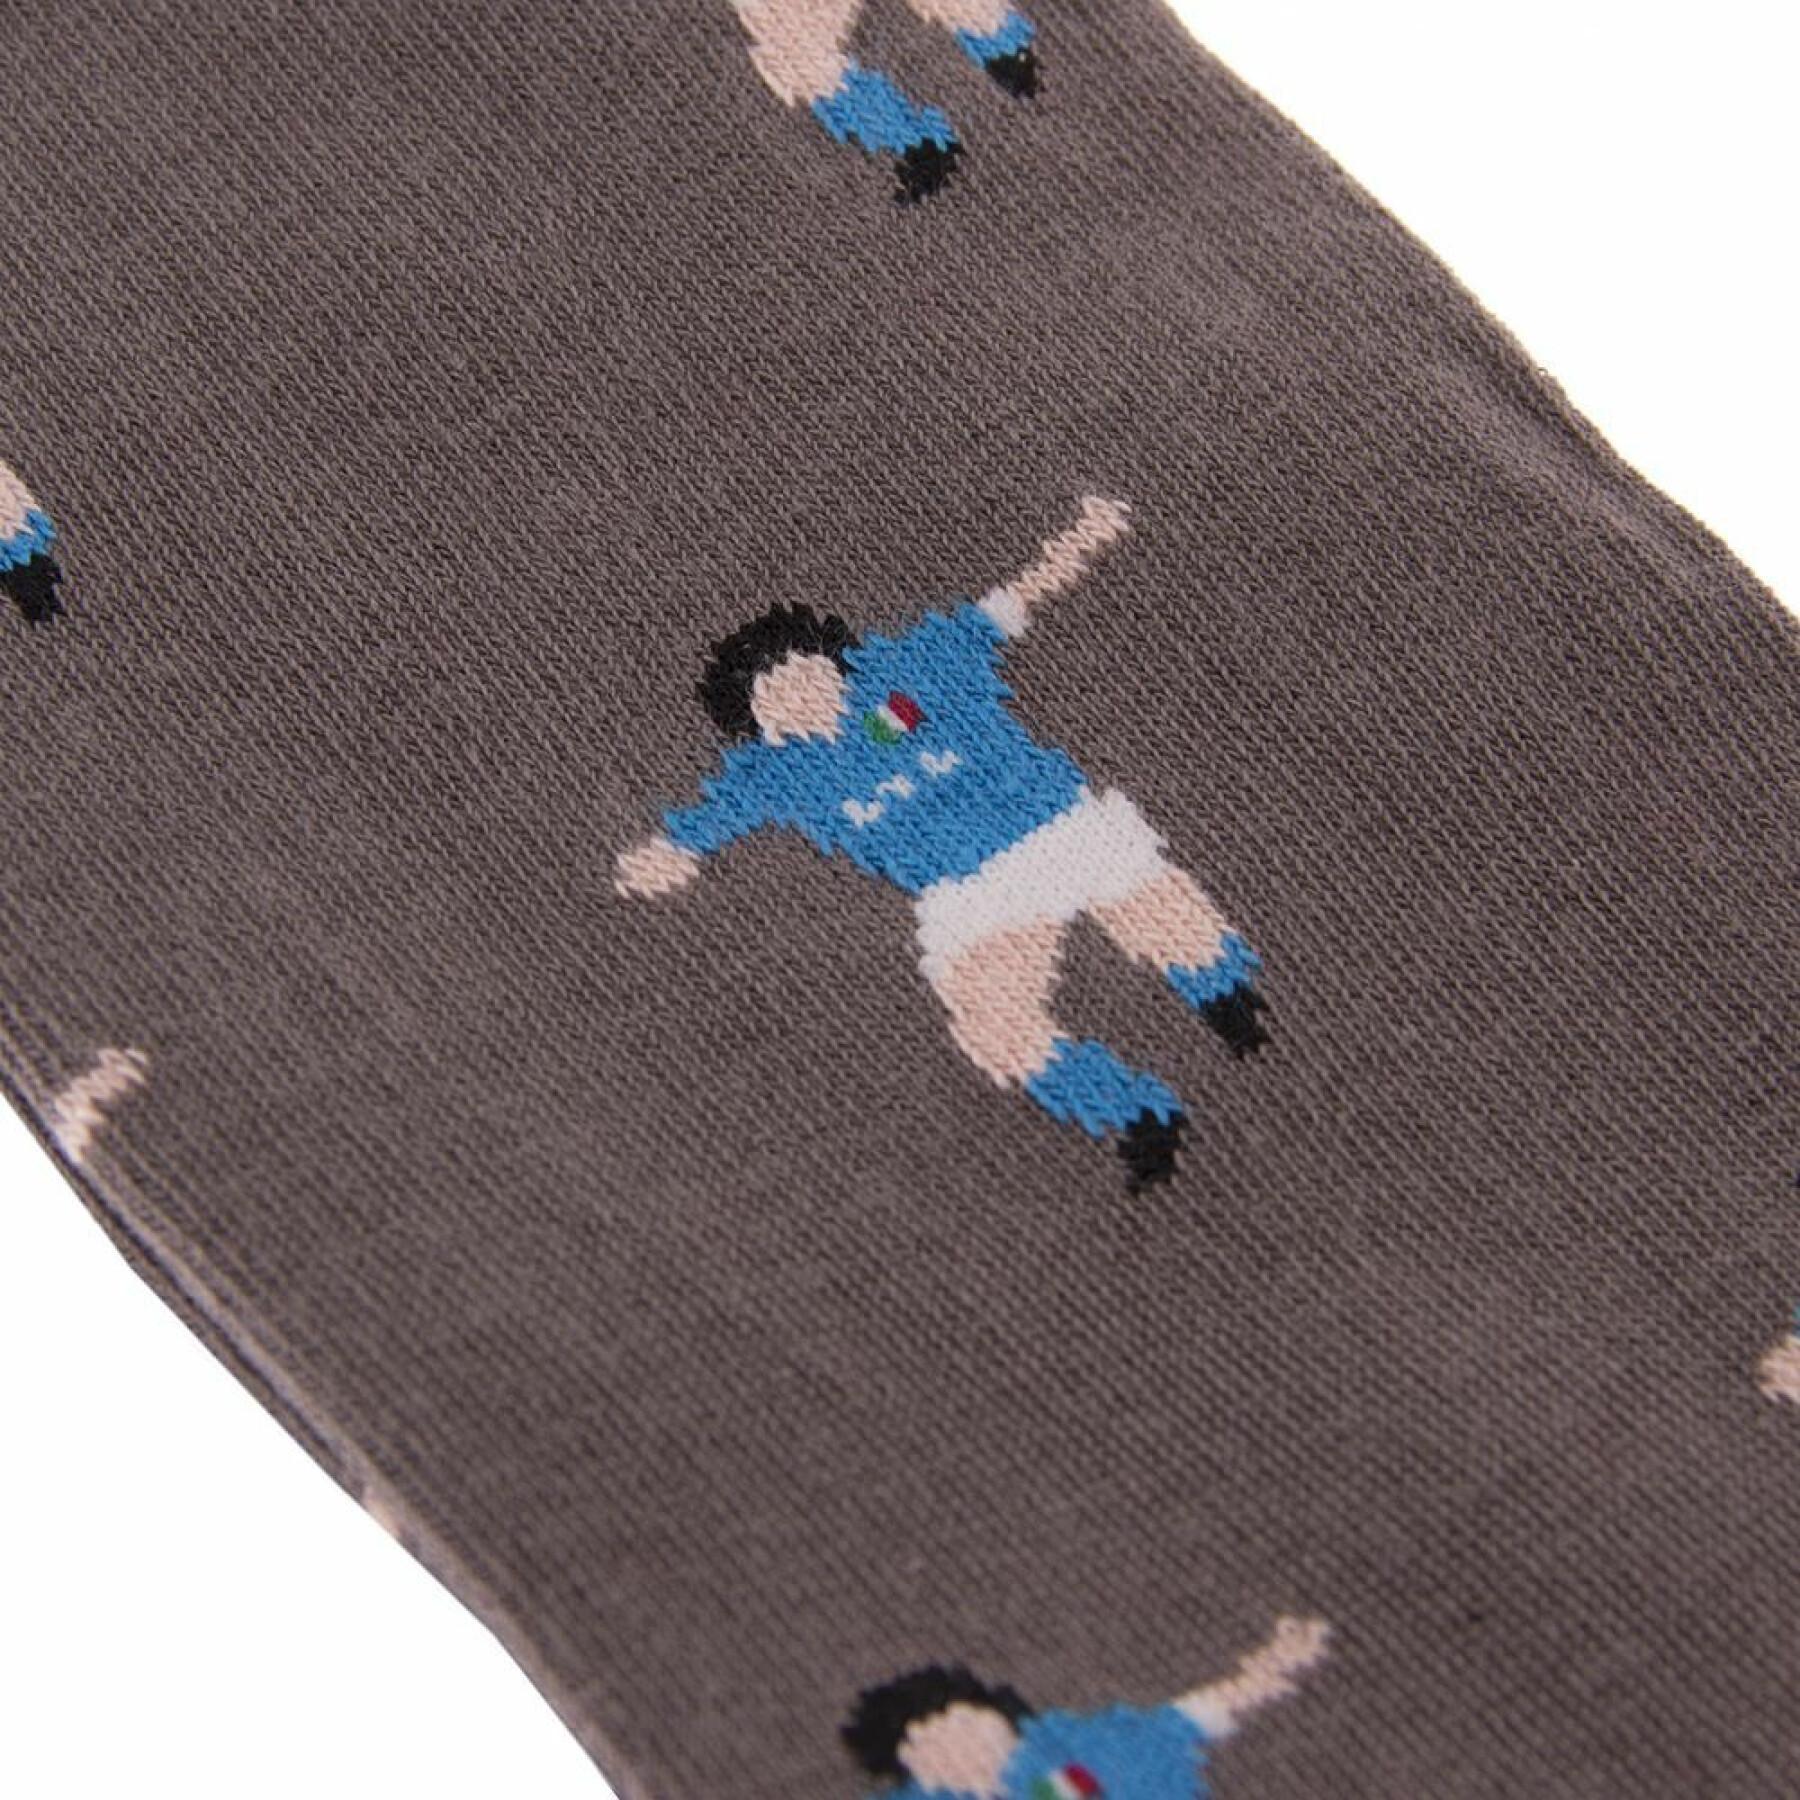 Socks Copa Football Maradona Napoli